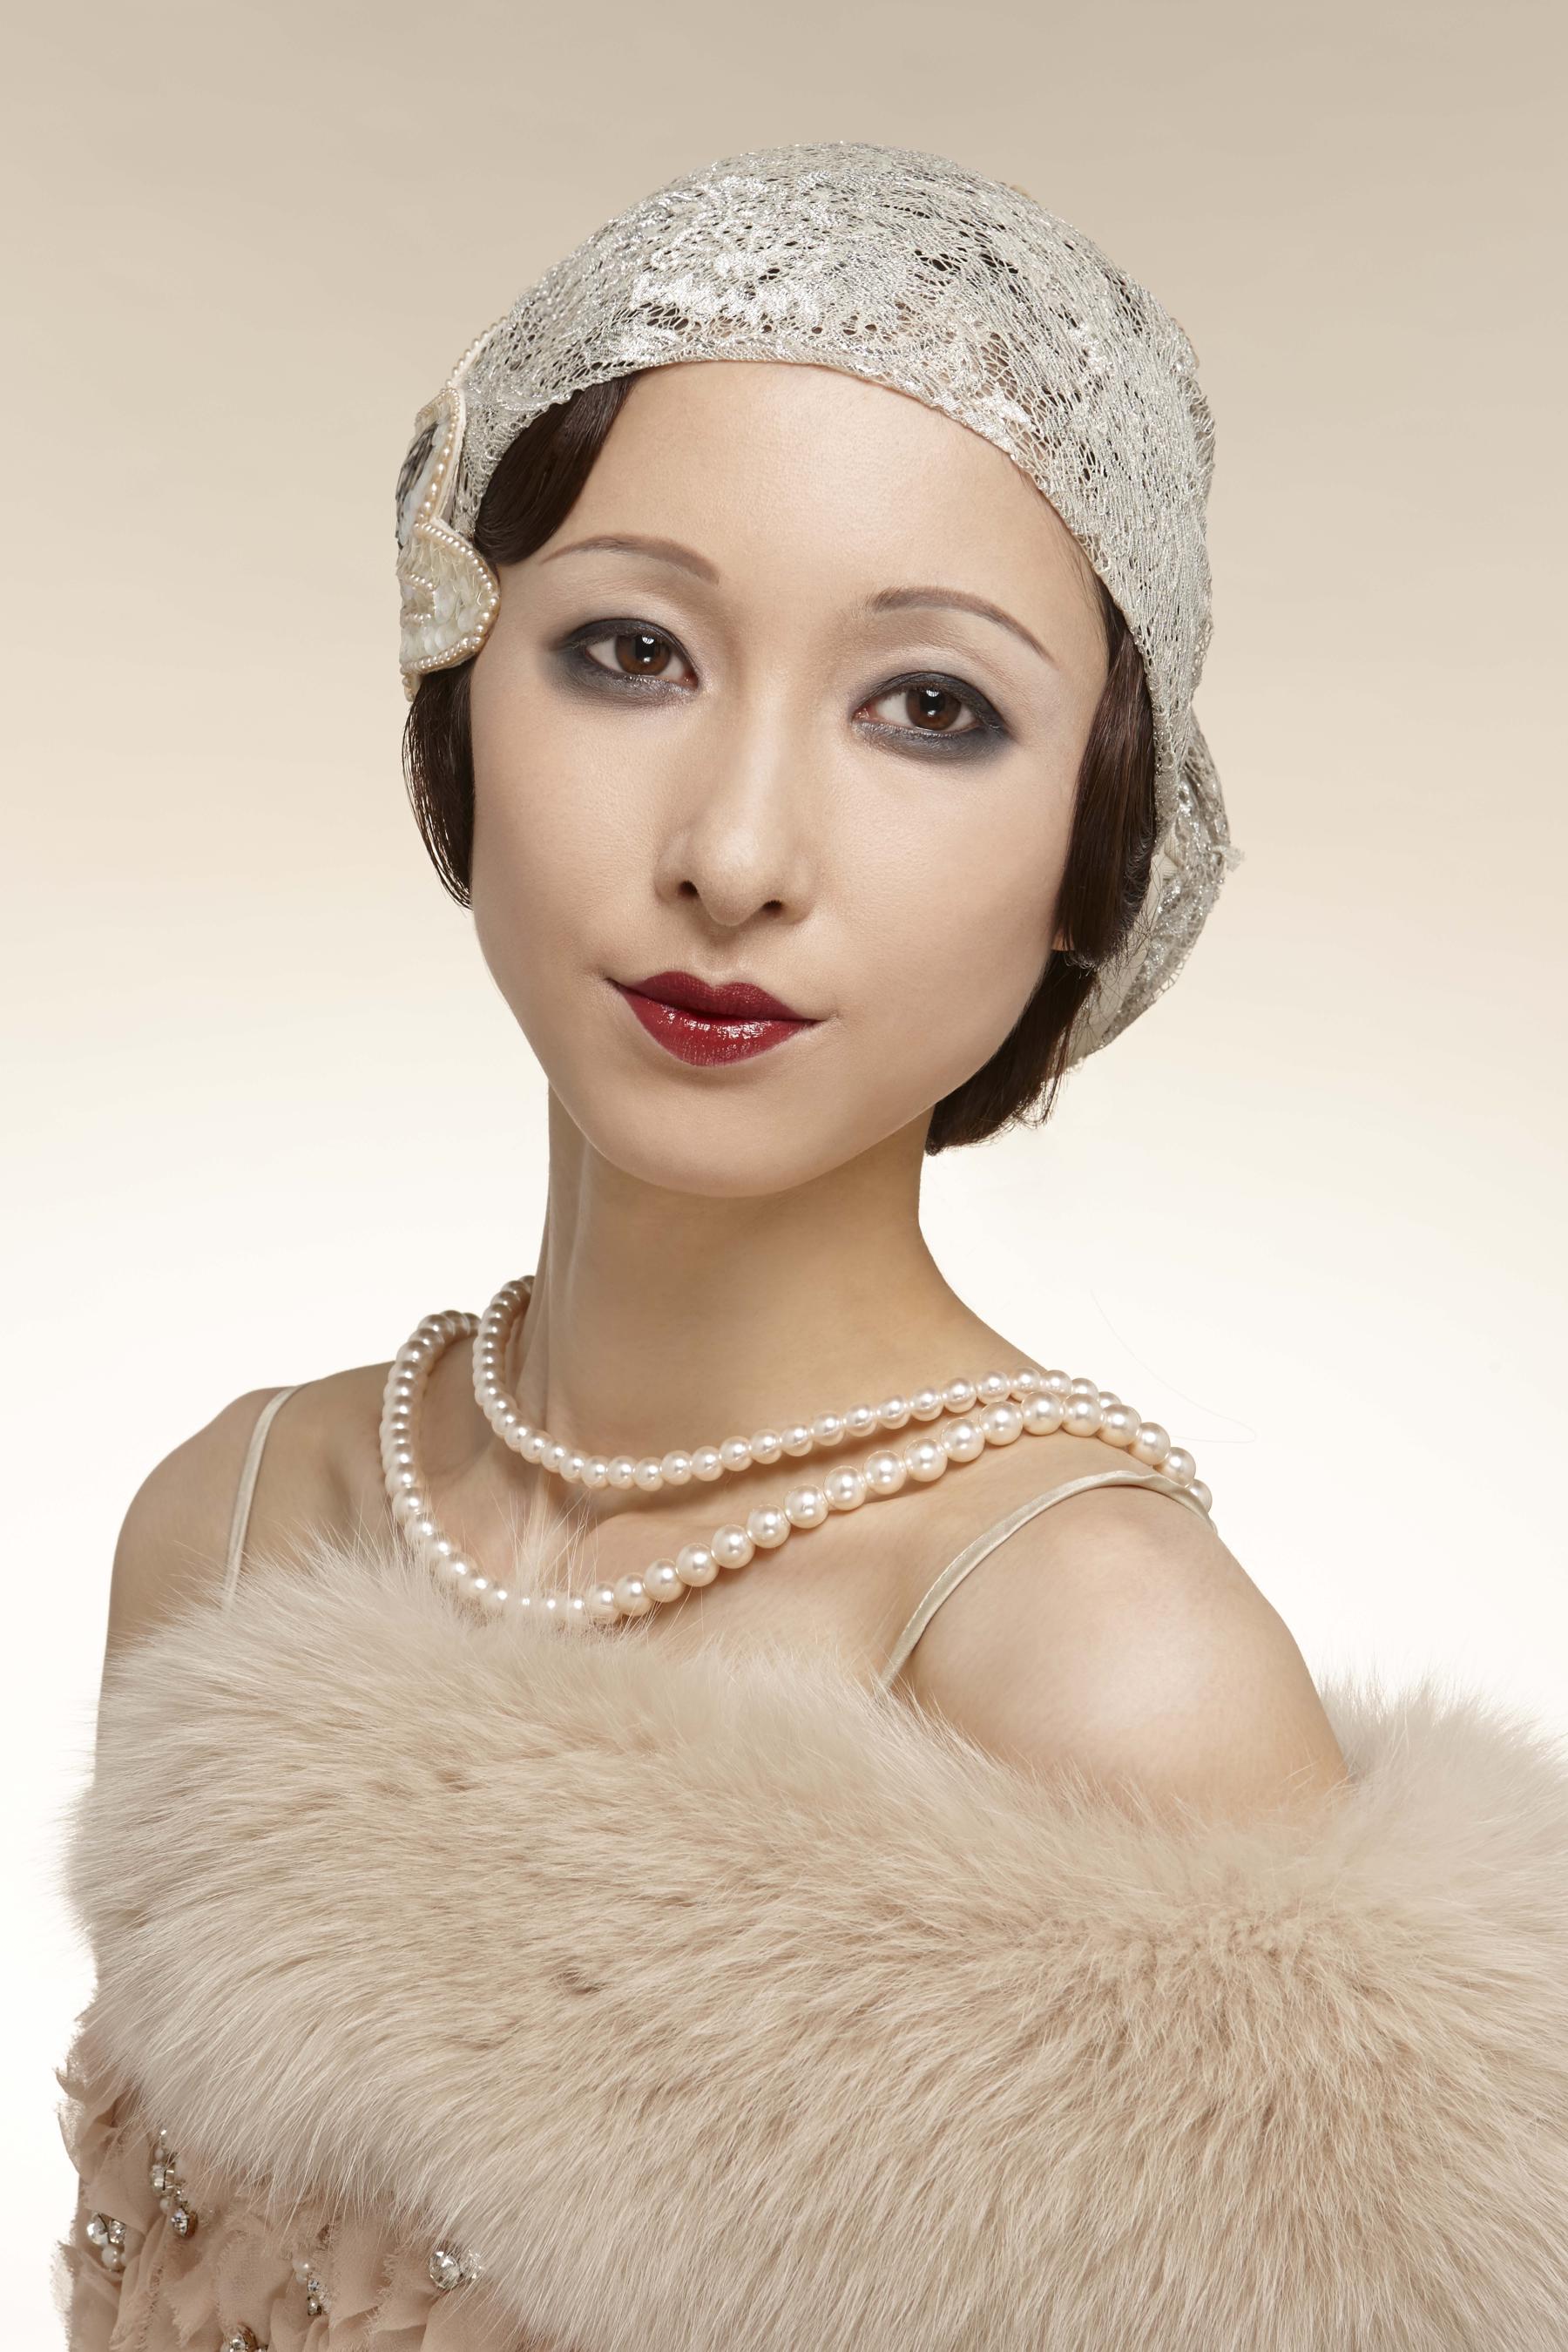 日本女性の化粧の変遷100年 資生堂ヘアメイクアップアーティスト